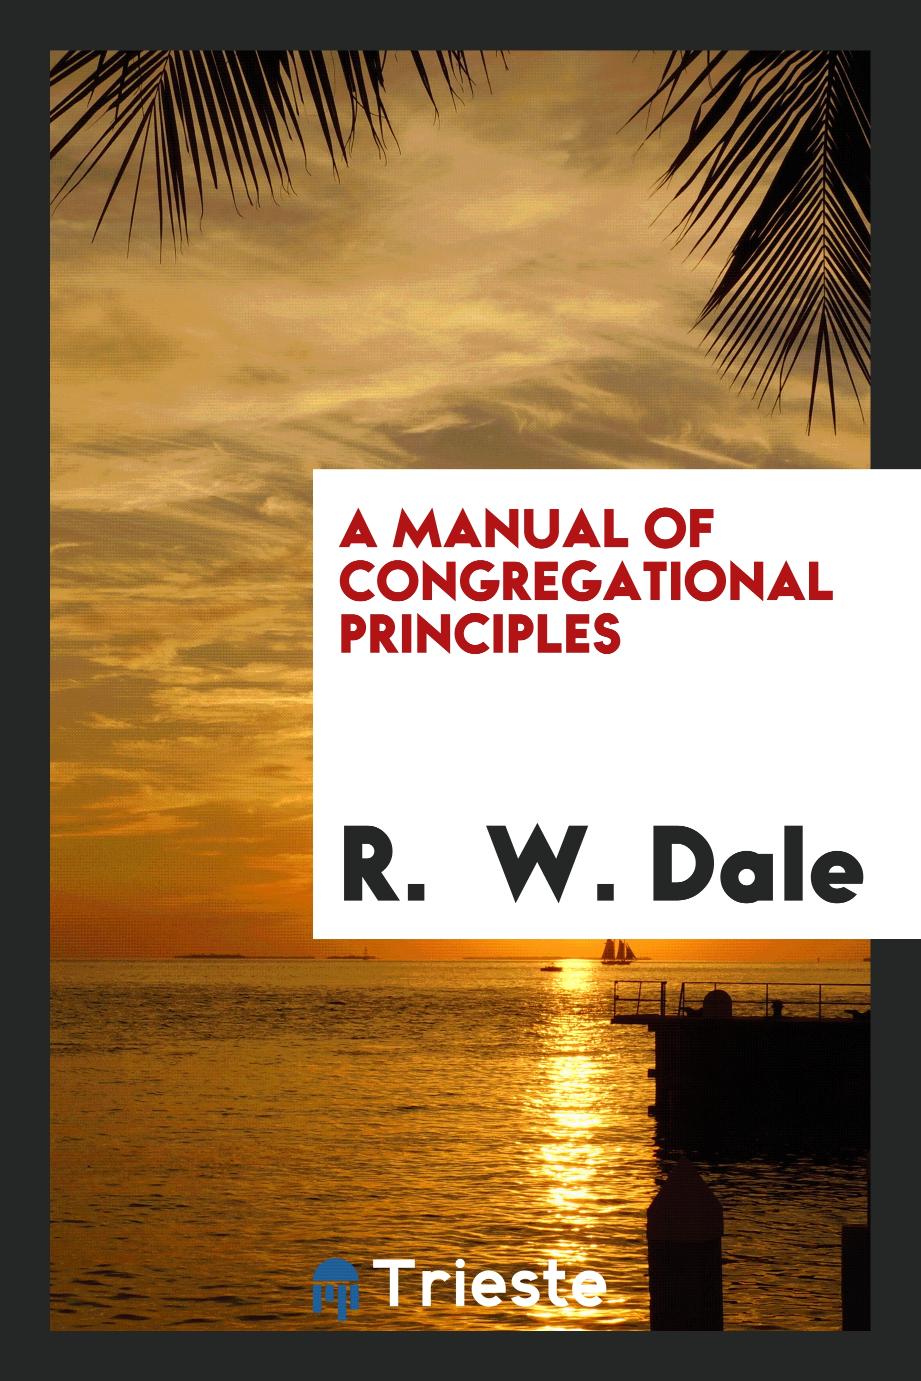 A manual of Congregational principles